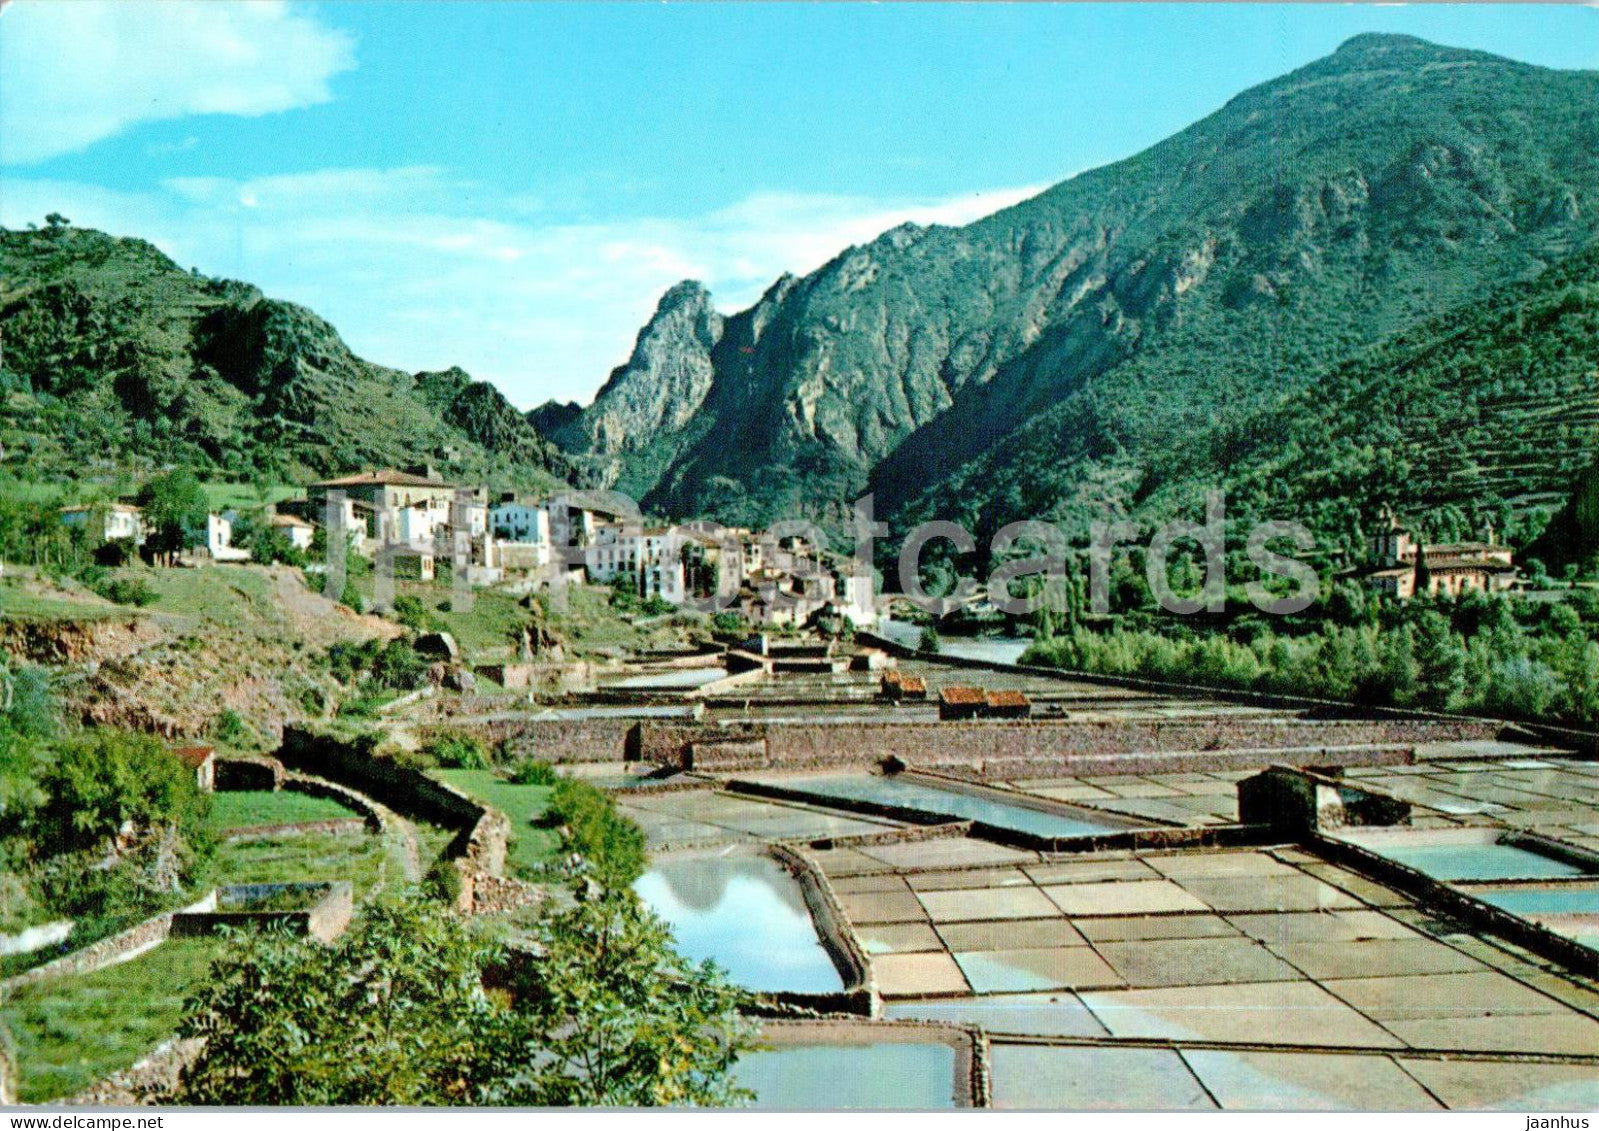 Pirineos de Lerida - El Pallars - Gerri de La Sal - 5098 - Spain - unused - JH Postcards